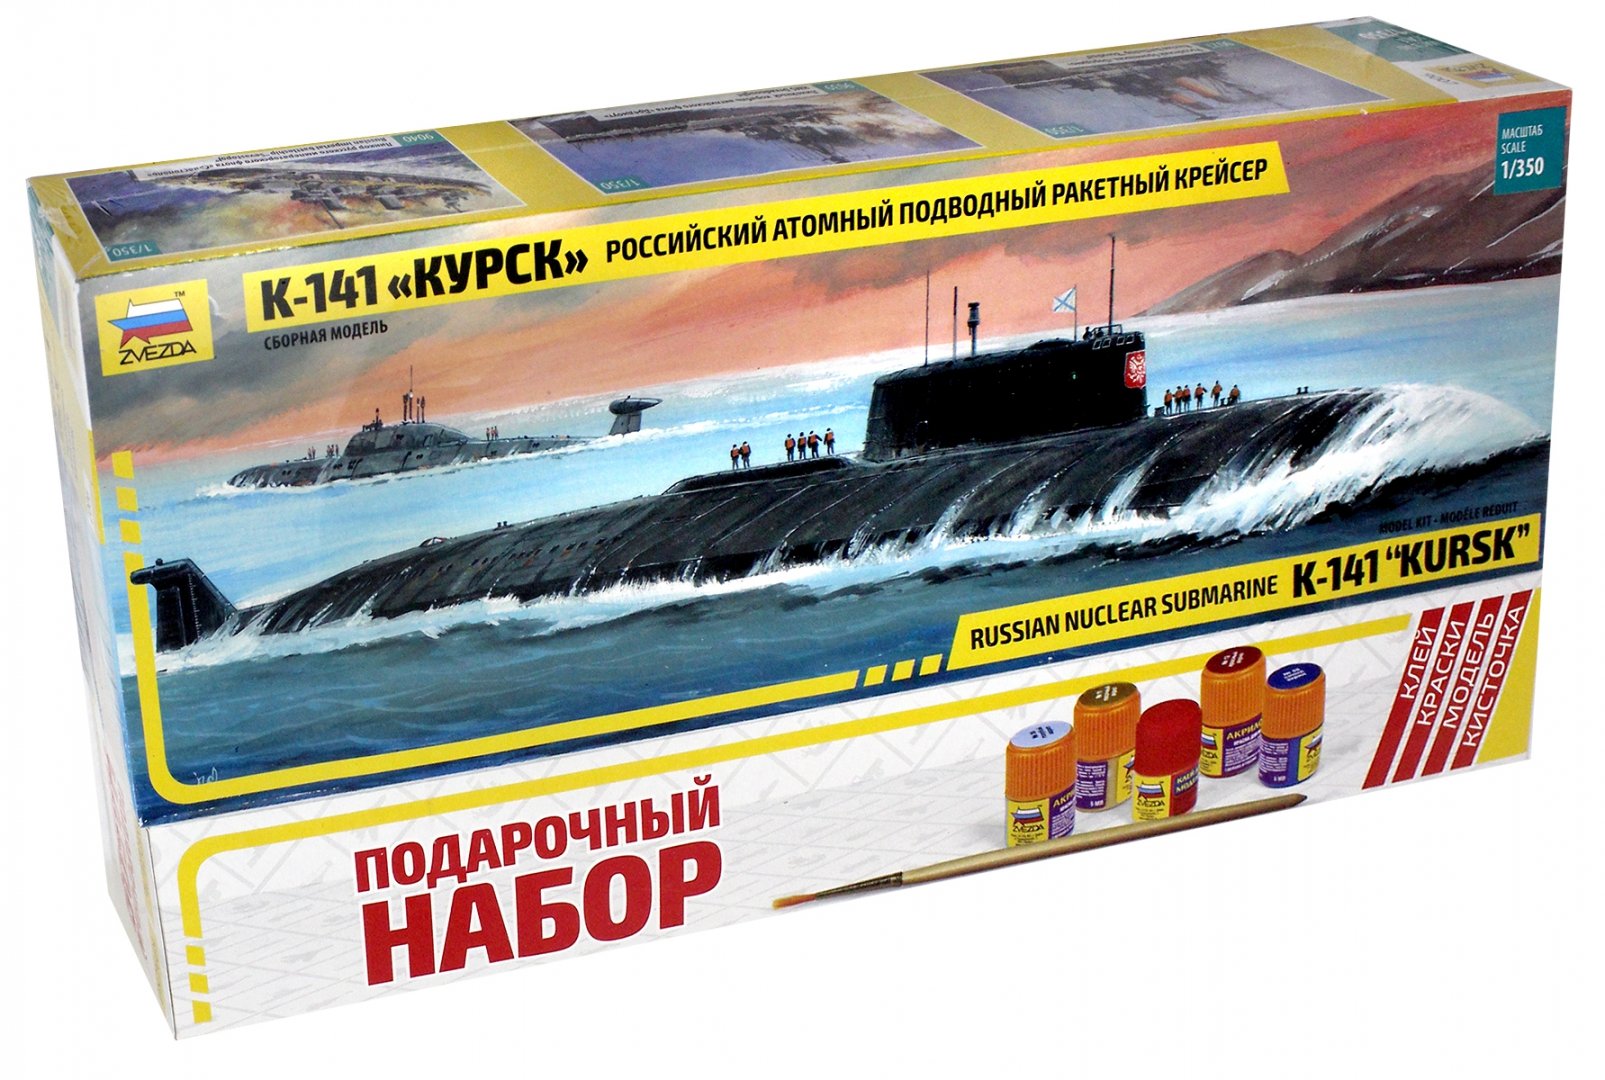 Иллюстрация 1 из 4 для Российская атомная подводная лодка "Курск" К-141 (М:1/350) (9007П) | Лабиринт - игрушки. Источник: Лабиринт